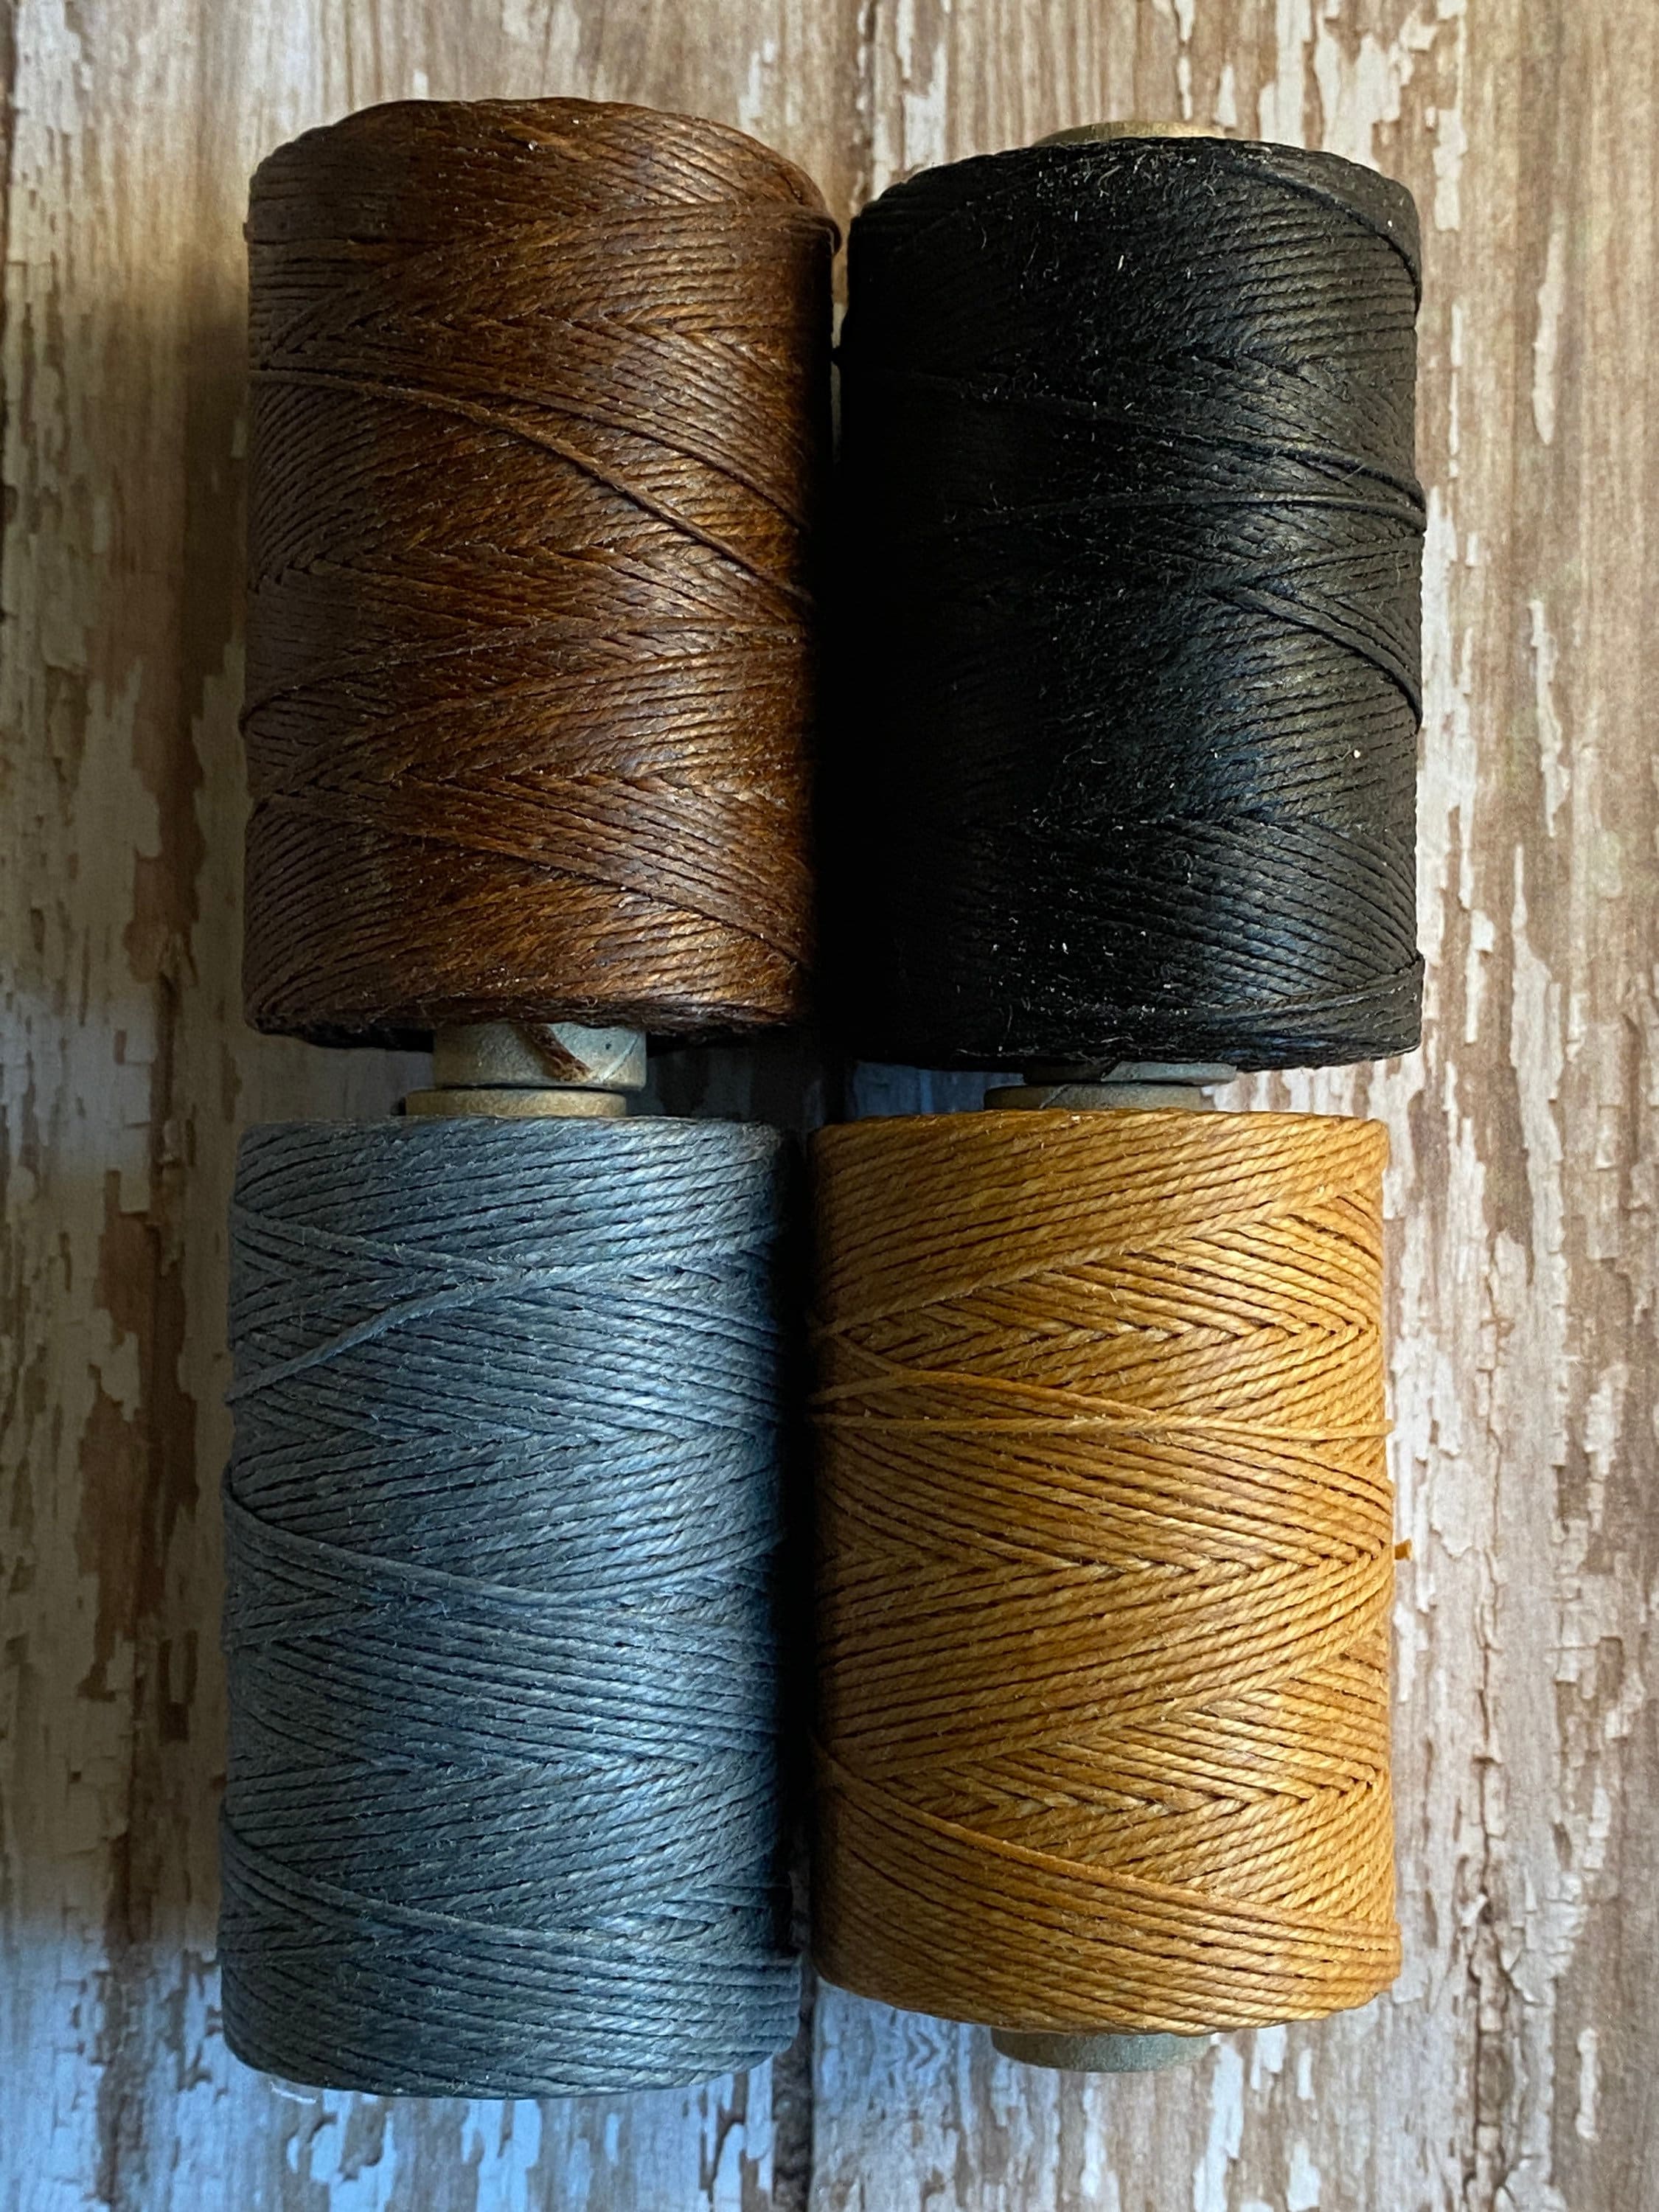 Yellow - somac linen waxed thread